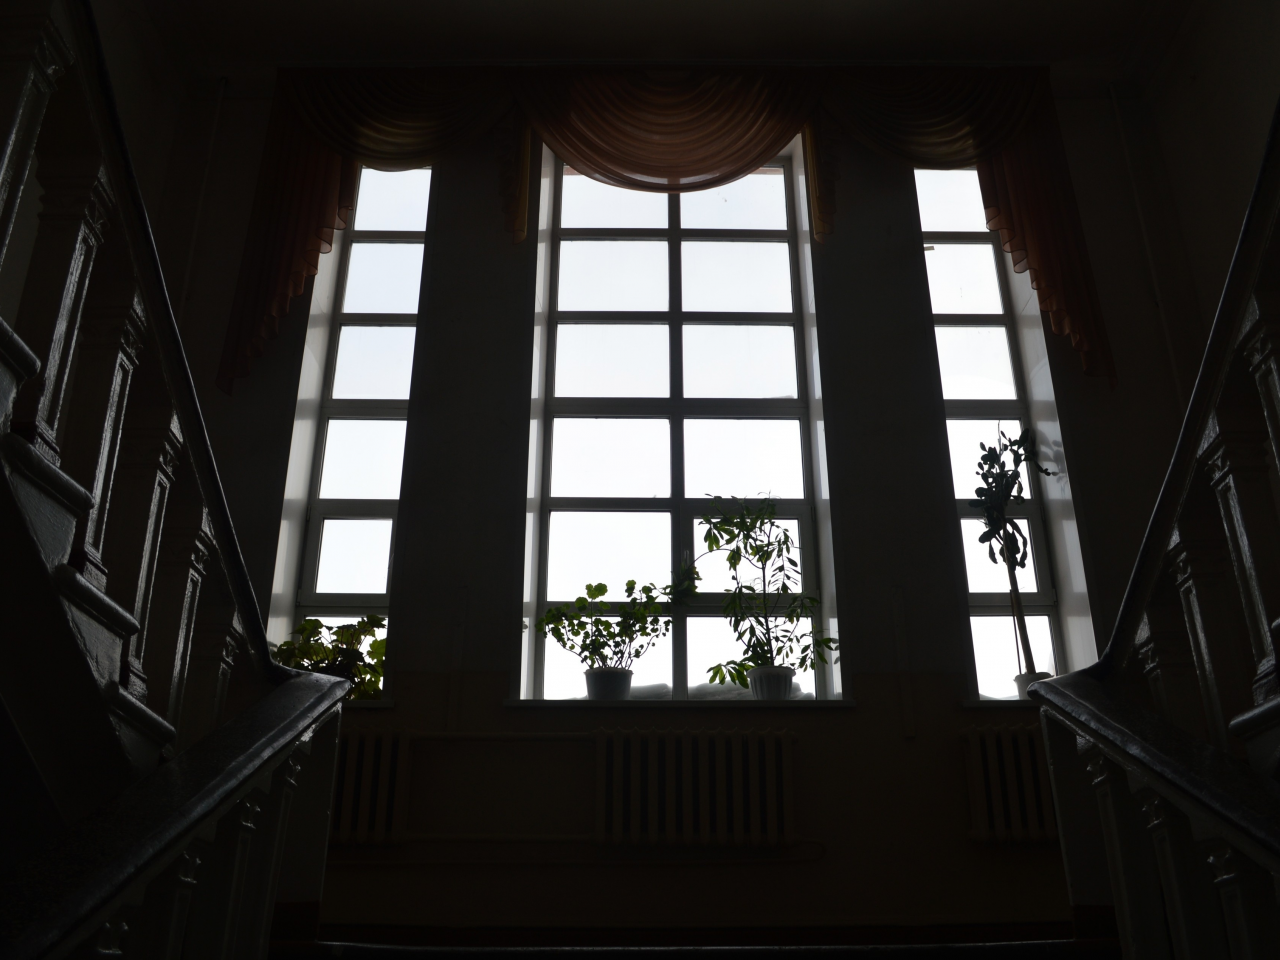 окно, лестница, цветы, подоконник, шторы, полумрак, черно-белые